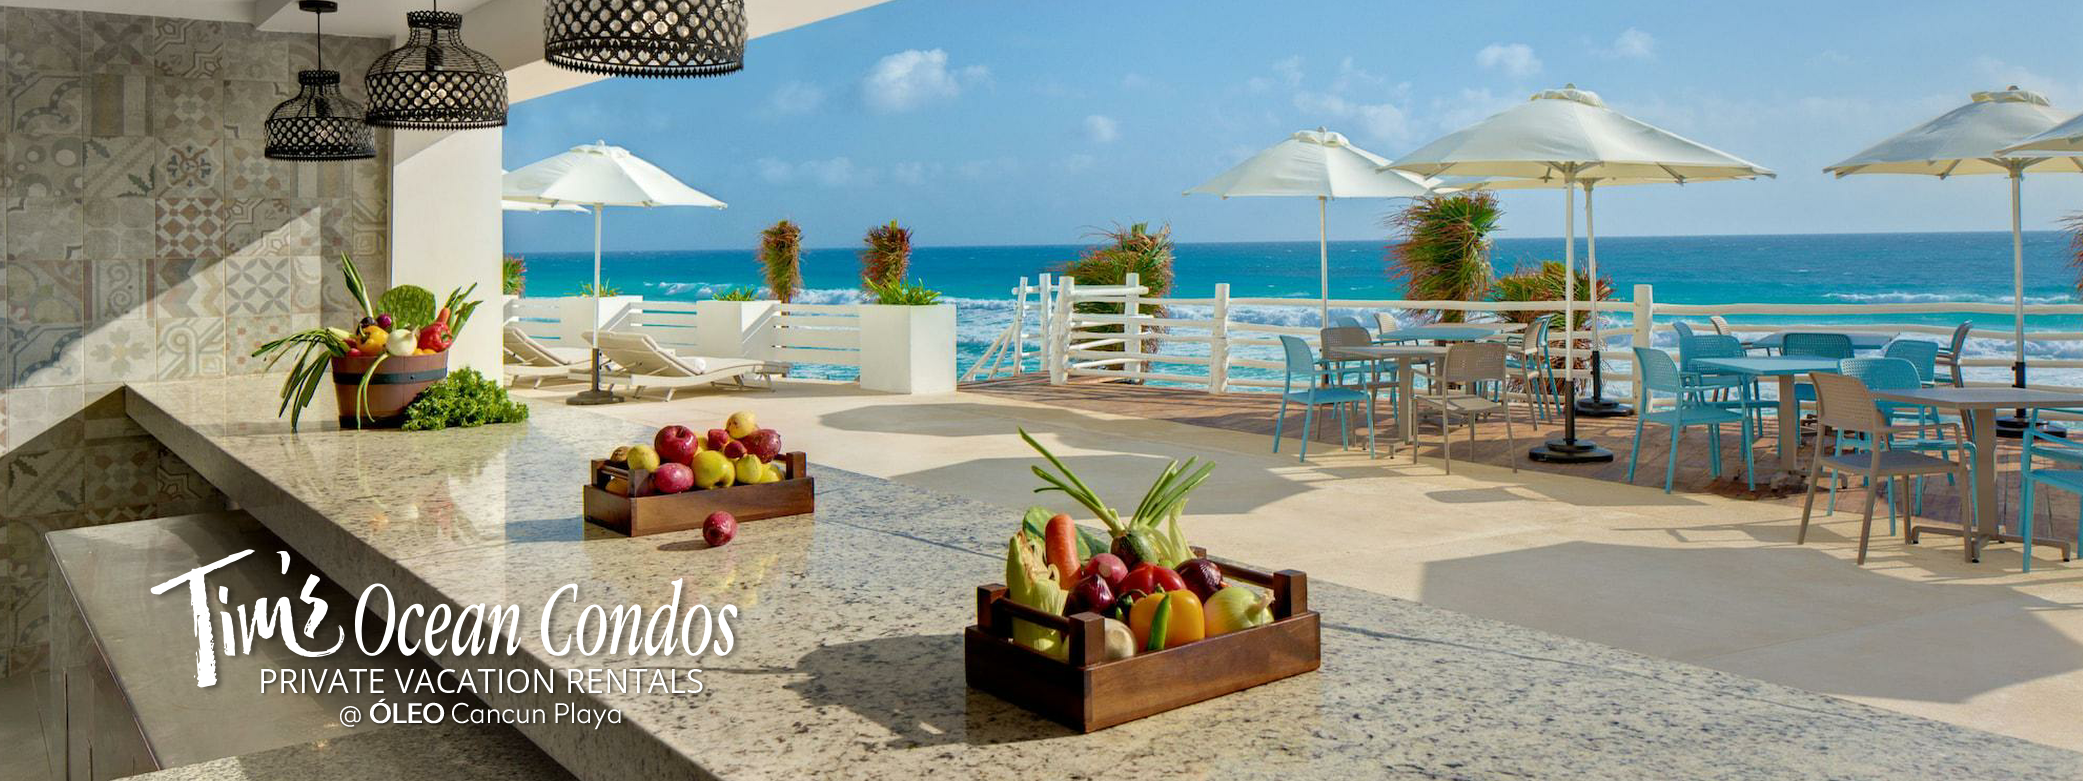 ÓLEO Cancún Playa All Inclusive - El Botanero